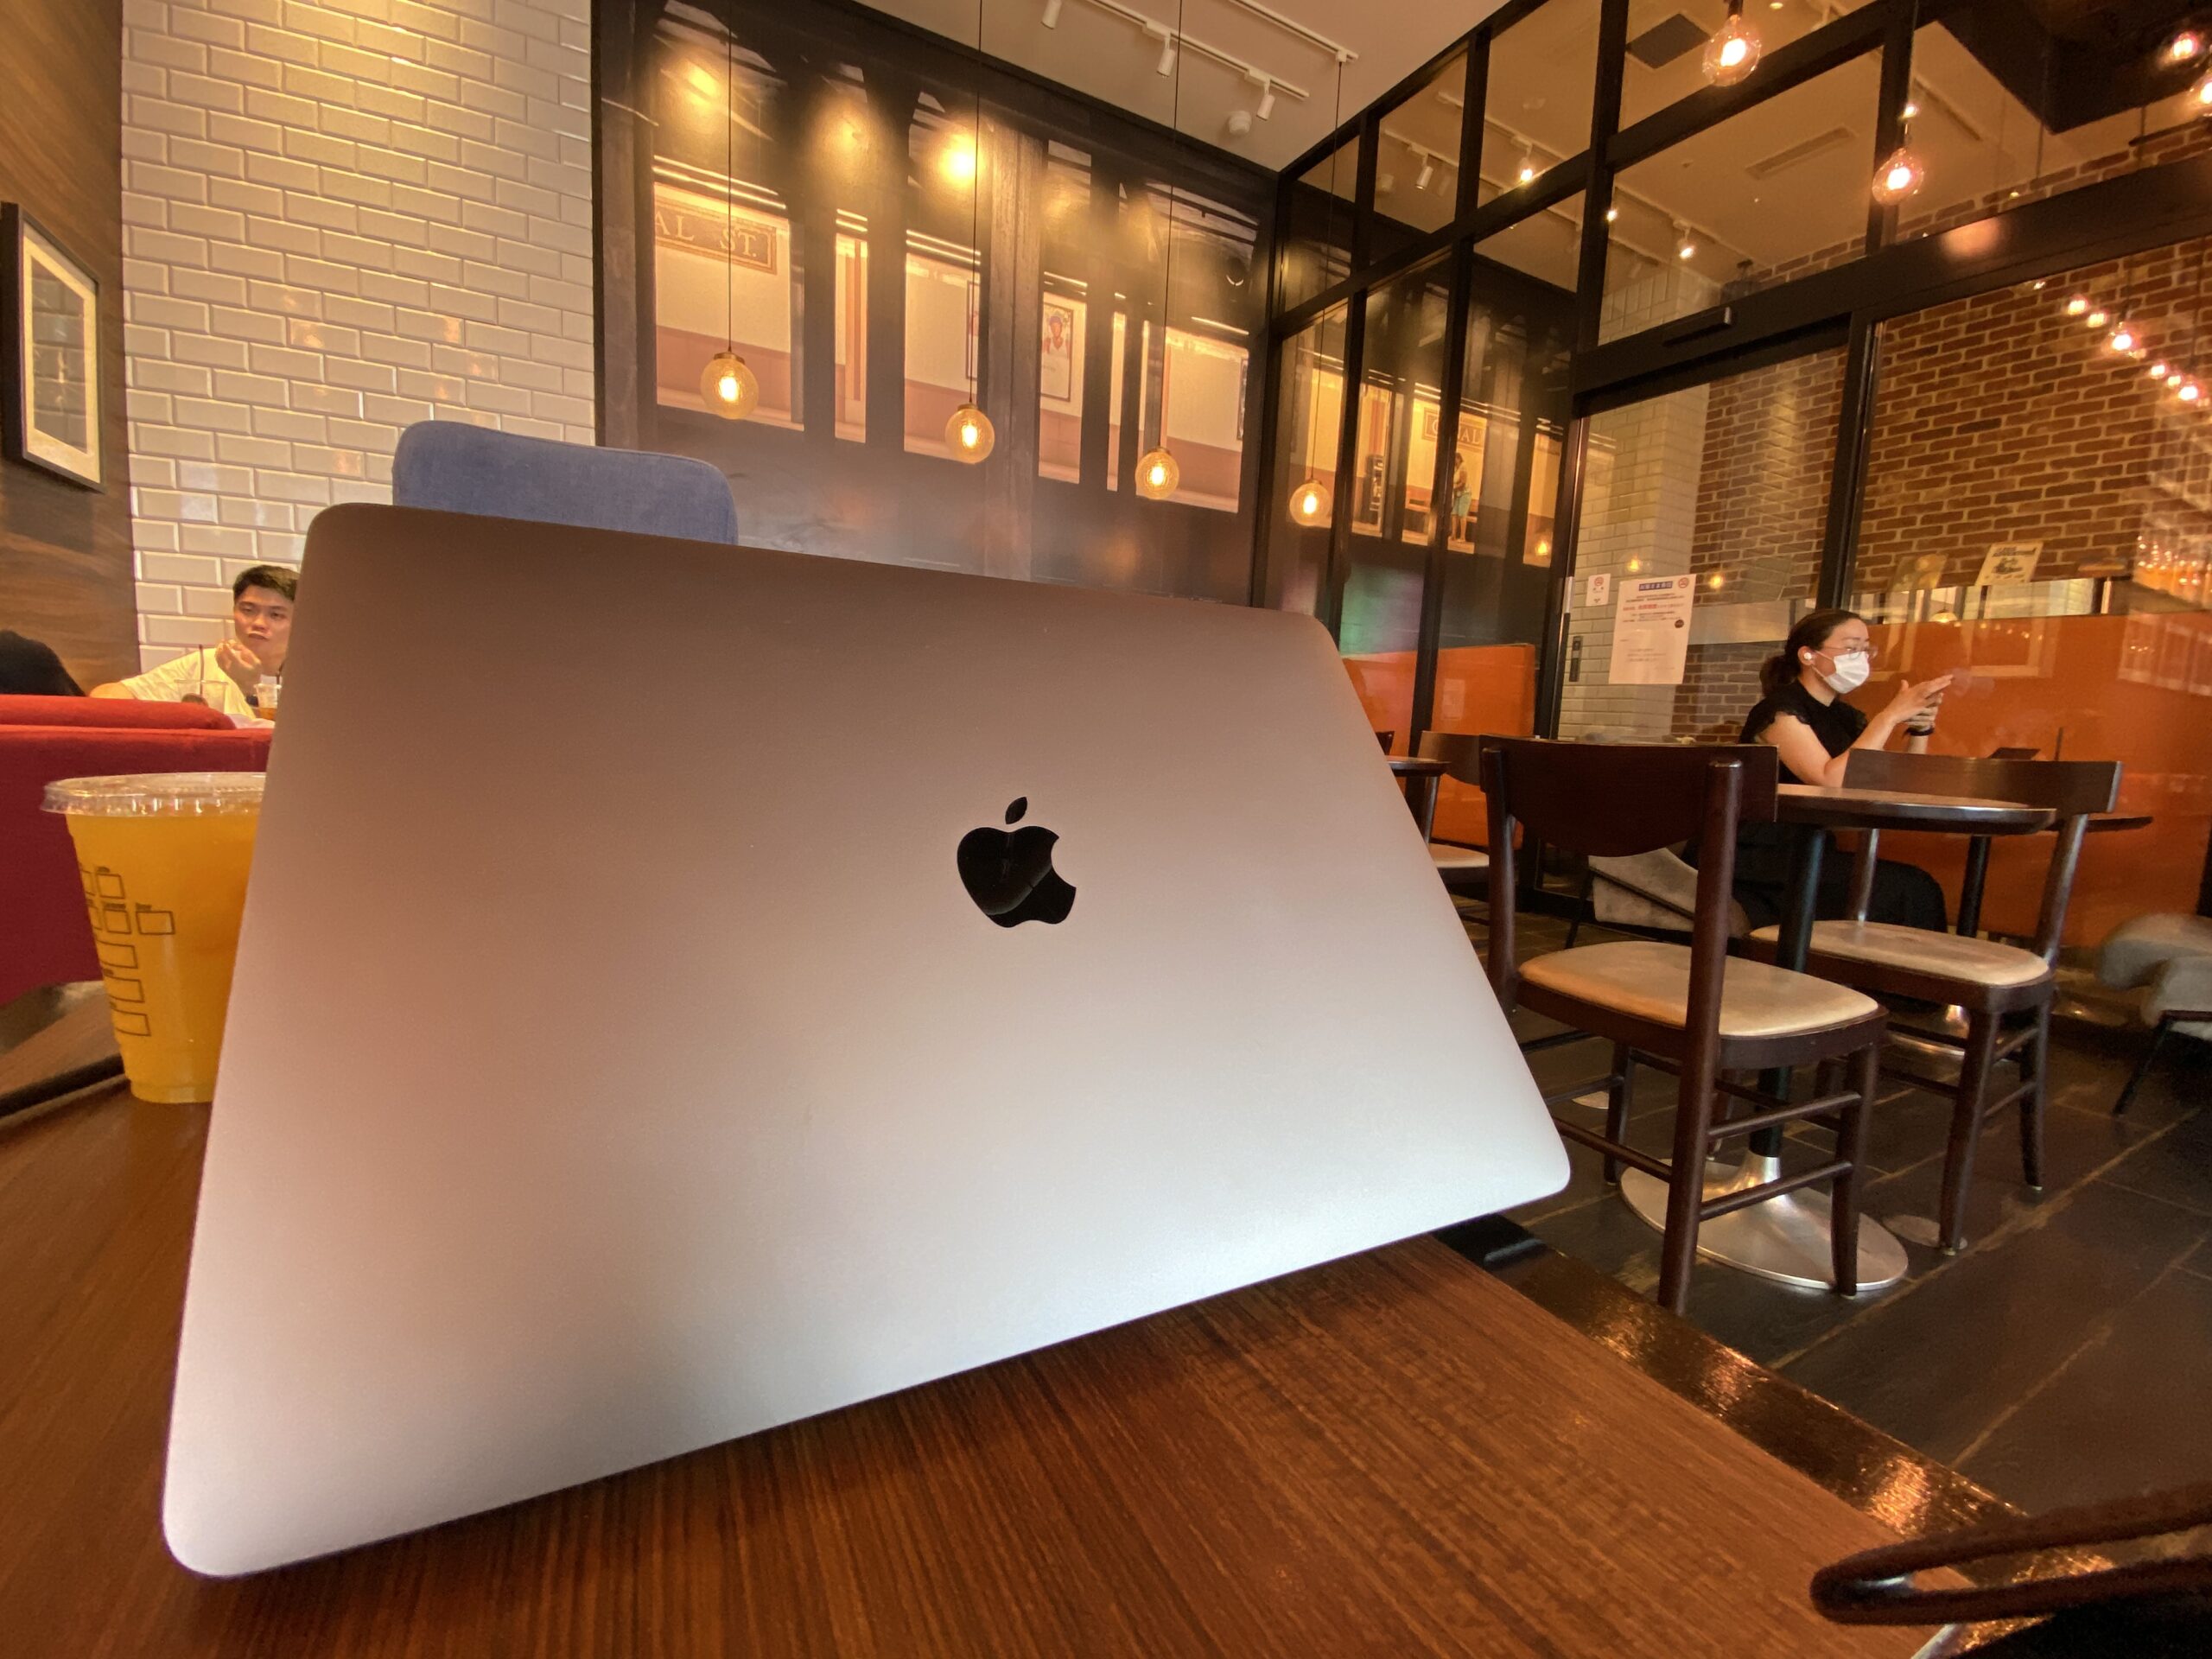 ブルートラベルエンジニア パソコン作業（プログラミング学習環境）におすすめのカフェ|新宿・高田馬場 PIER'S CAFE（ピアーズカフェ） 西武新宿店